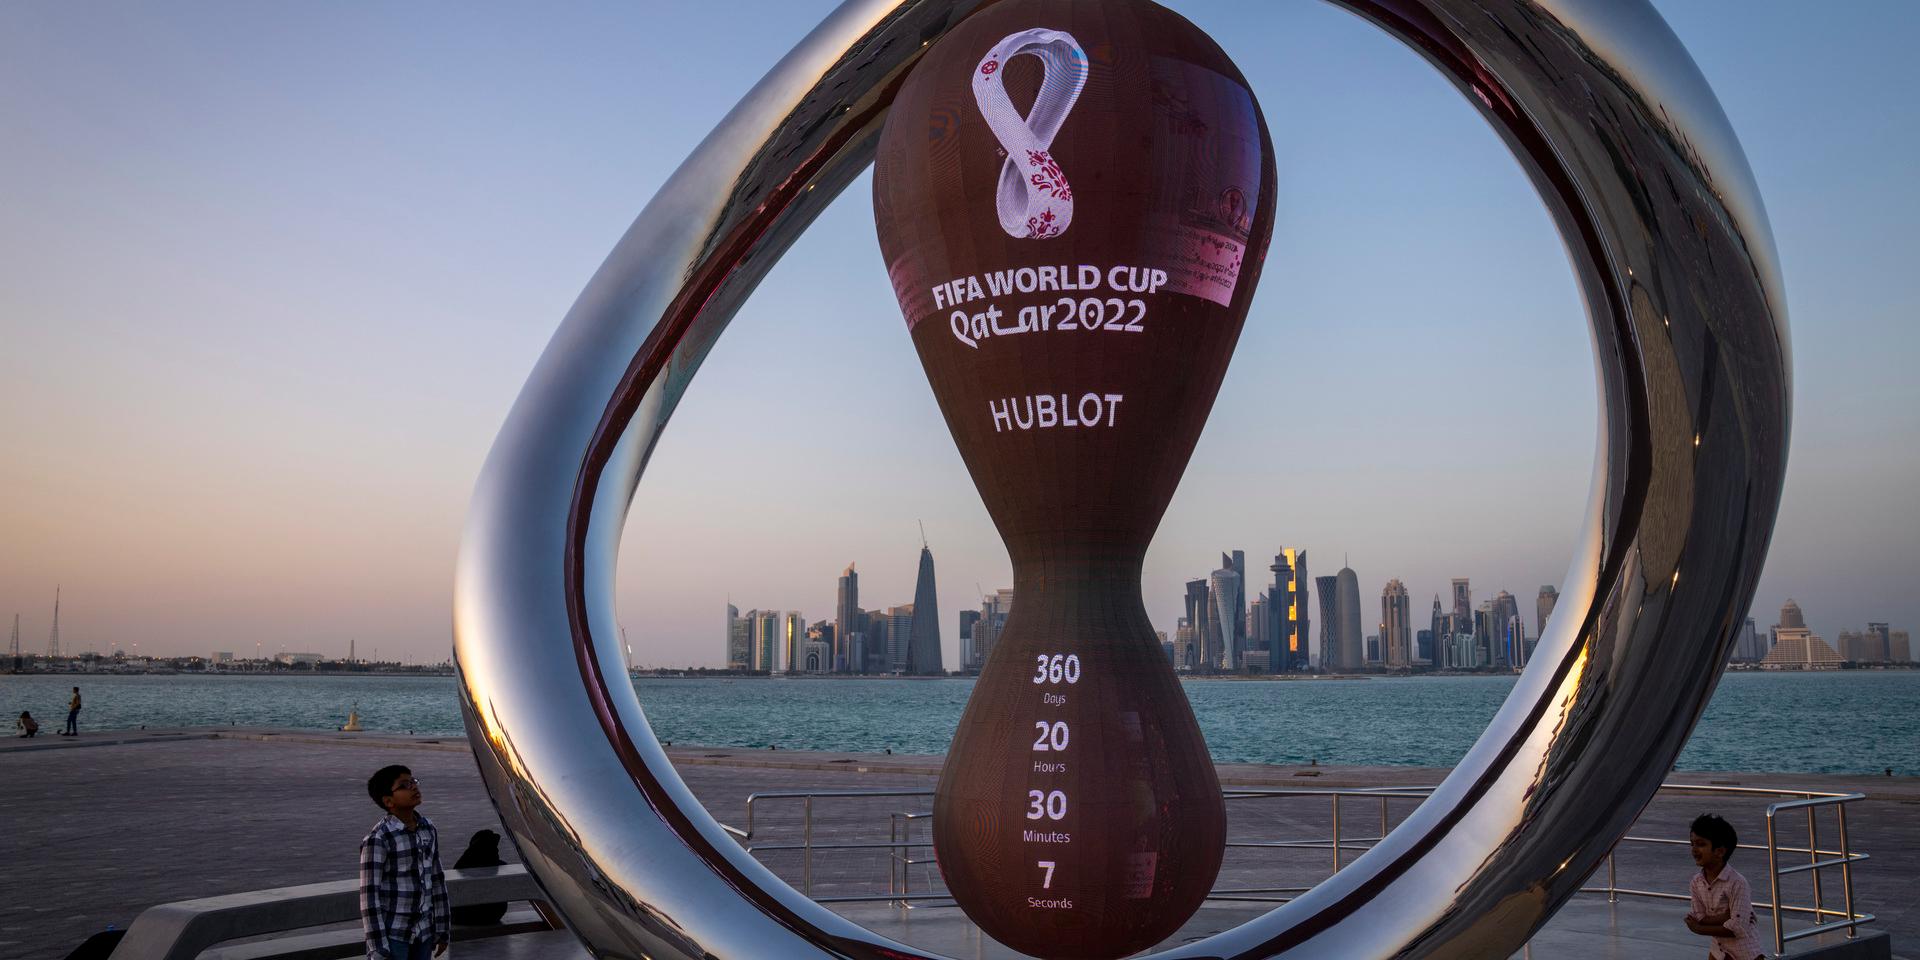 Biljetterna till fotbolls-VM i Qatar har nu släppts. Arkivbild.